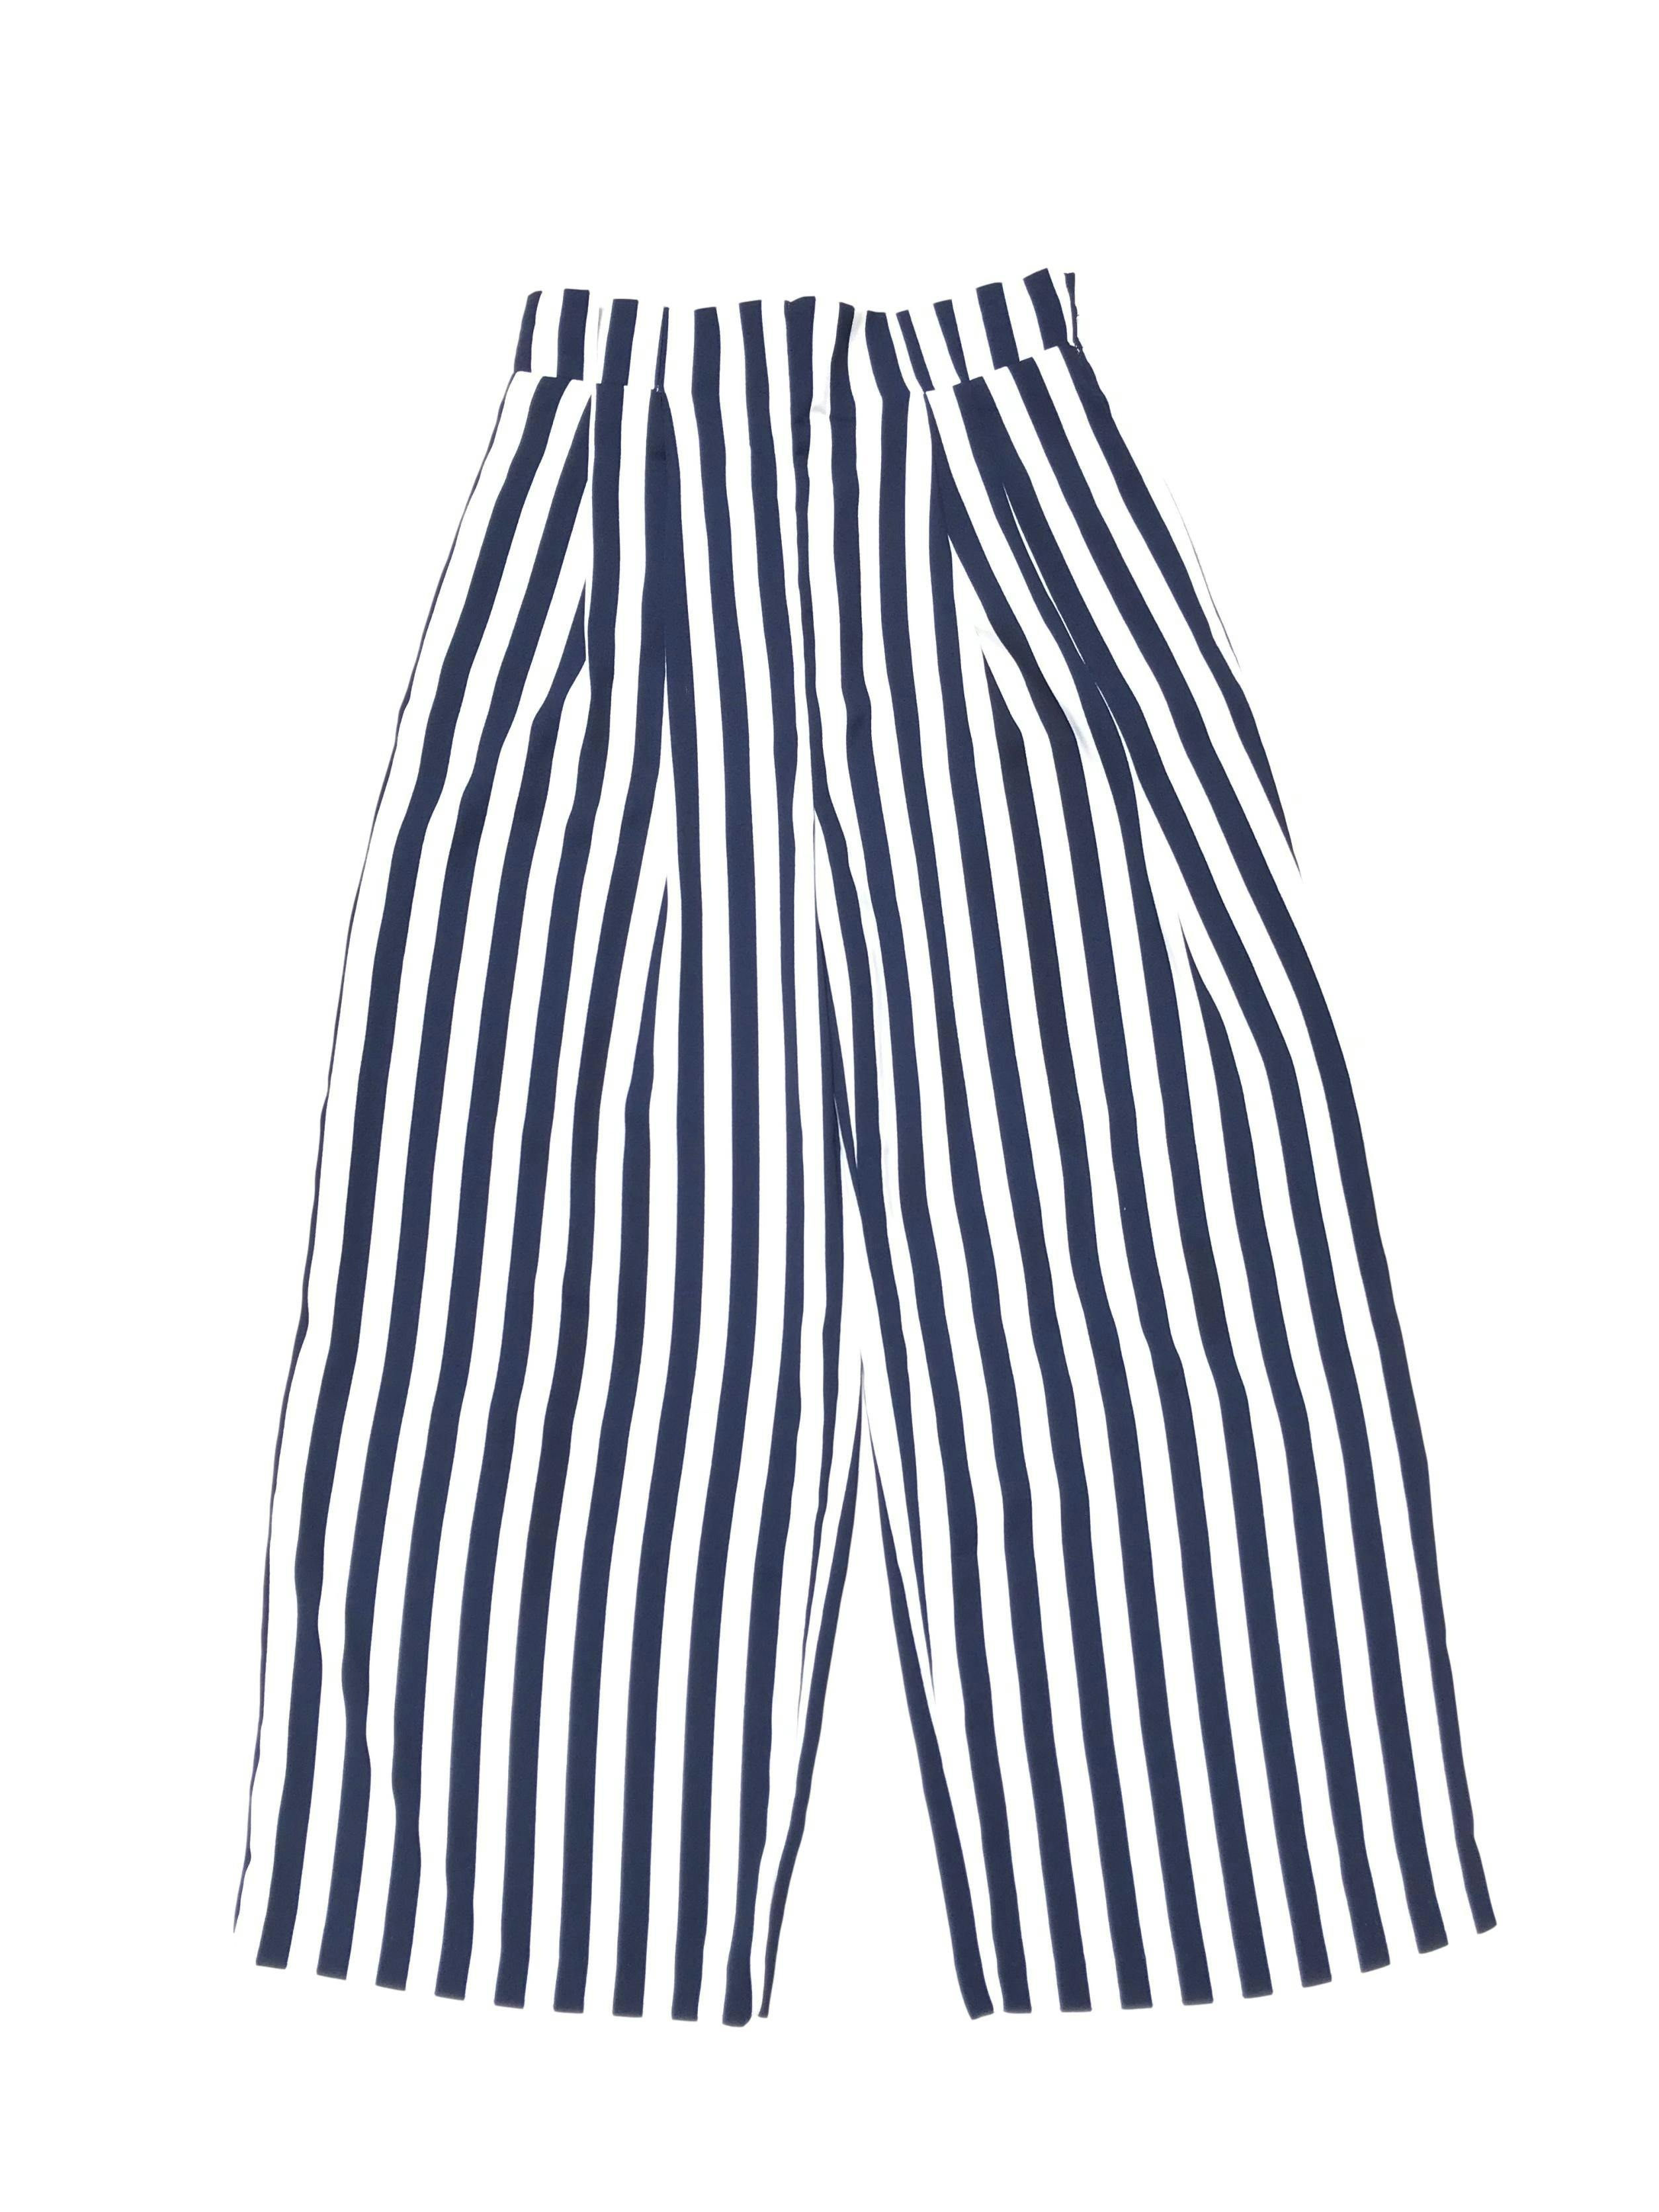 Pantalón culotte Zara a rayas blancas y azules, elástico y botones en la cintura, bolsillos laterales. Cintura 68cm (sin estirar) Largo 91cm